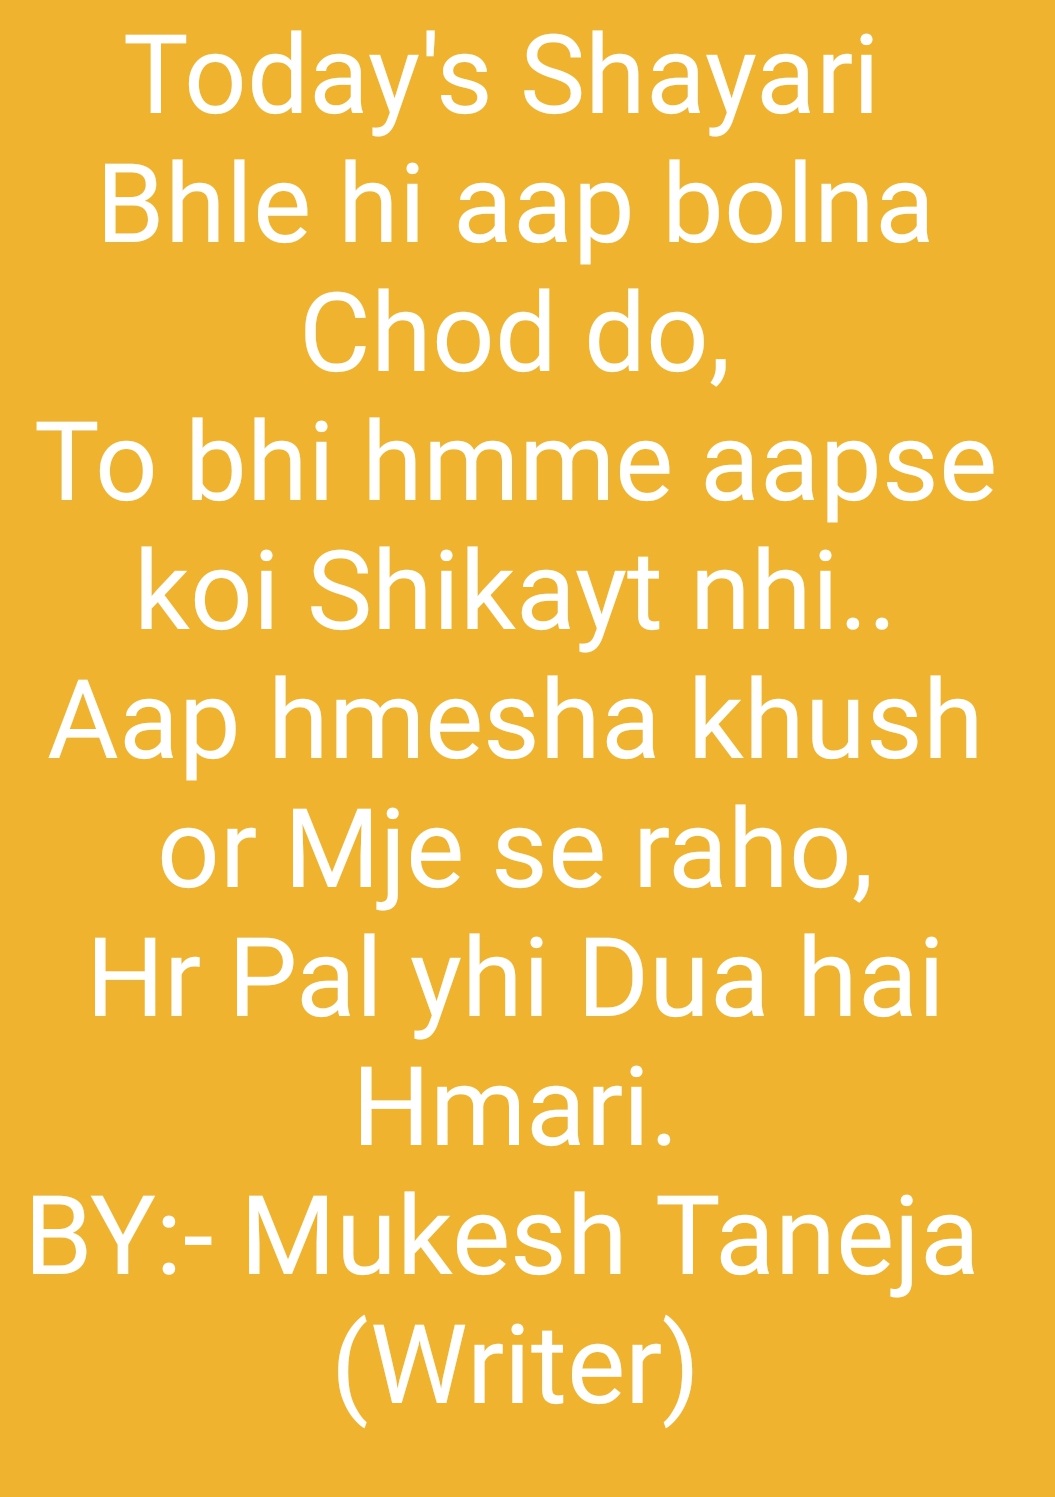 Write by:- Mukesh Taneja